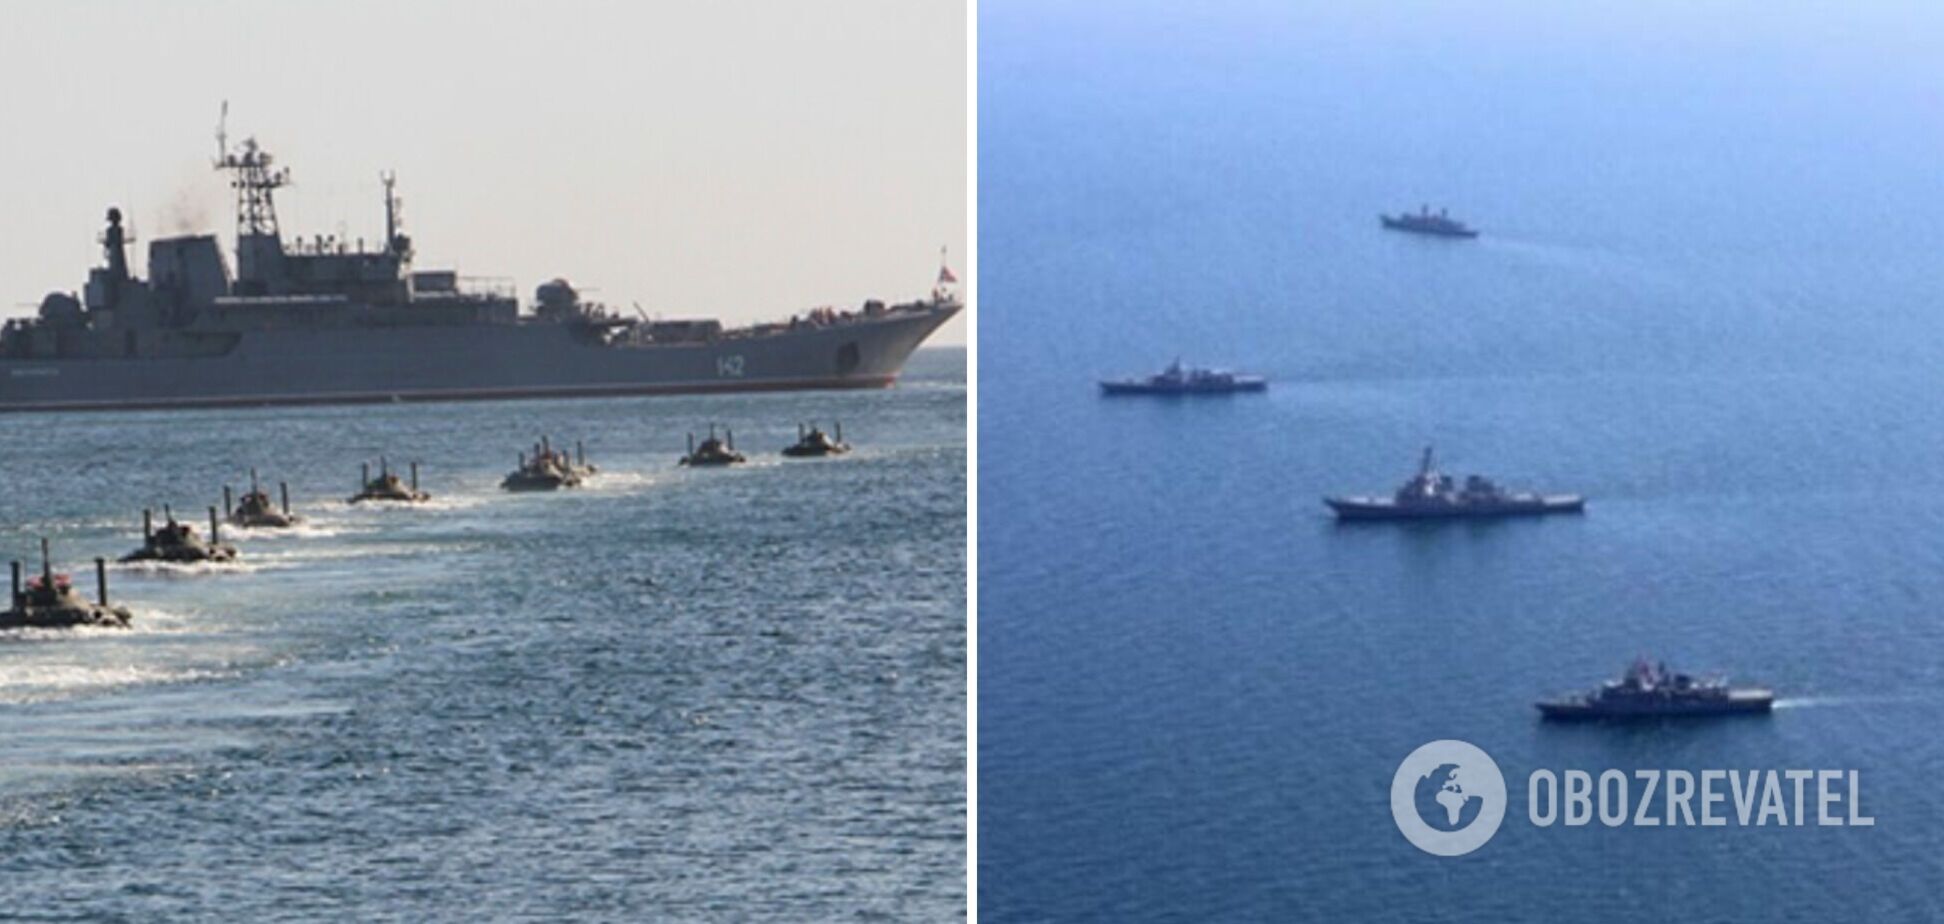 РФ стащила 28 ракет в Черное море, угроза для Украины сохраняется